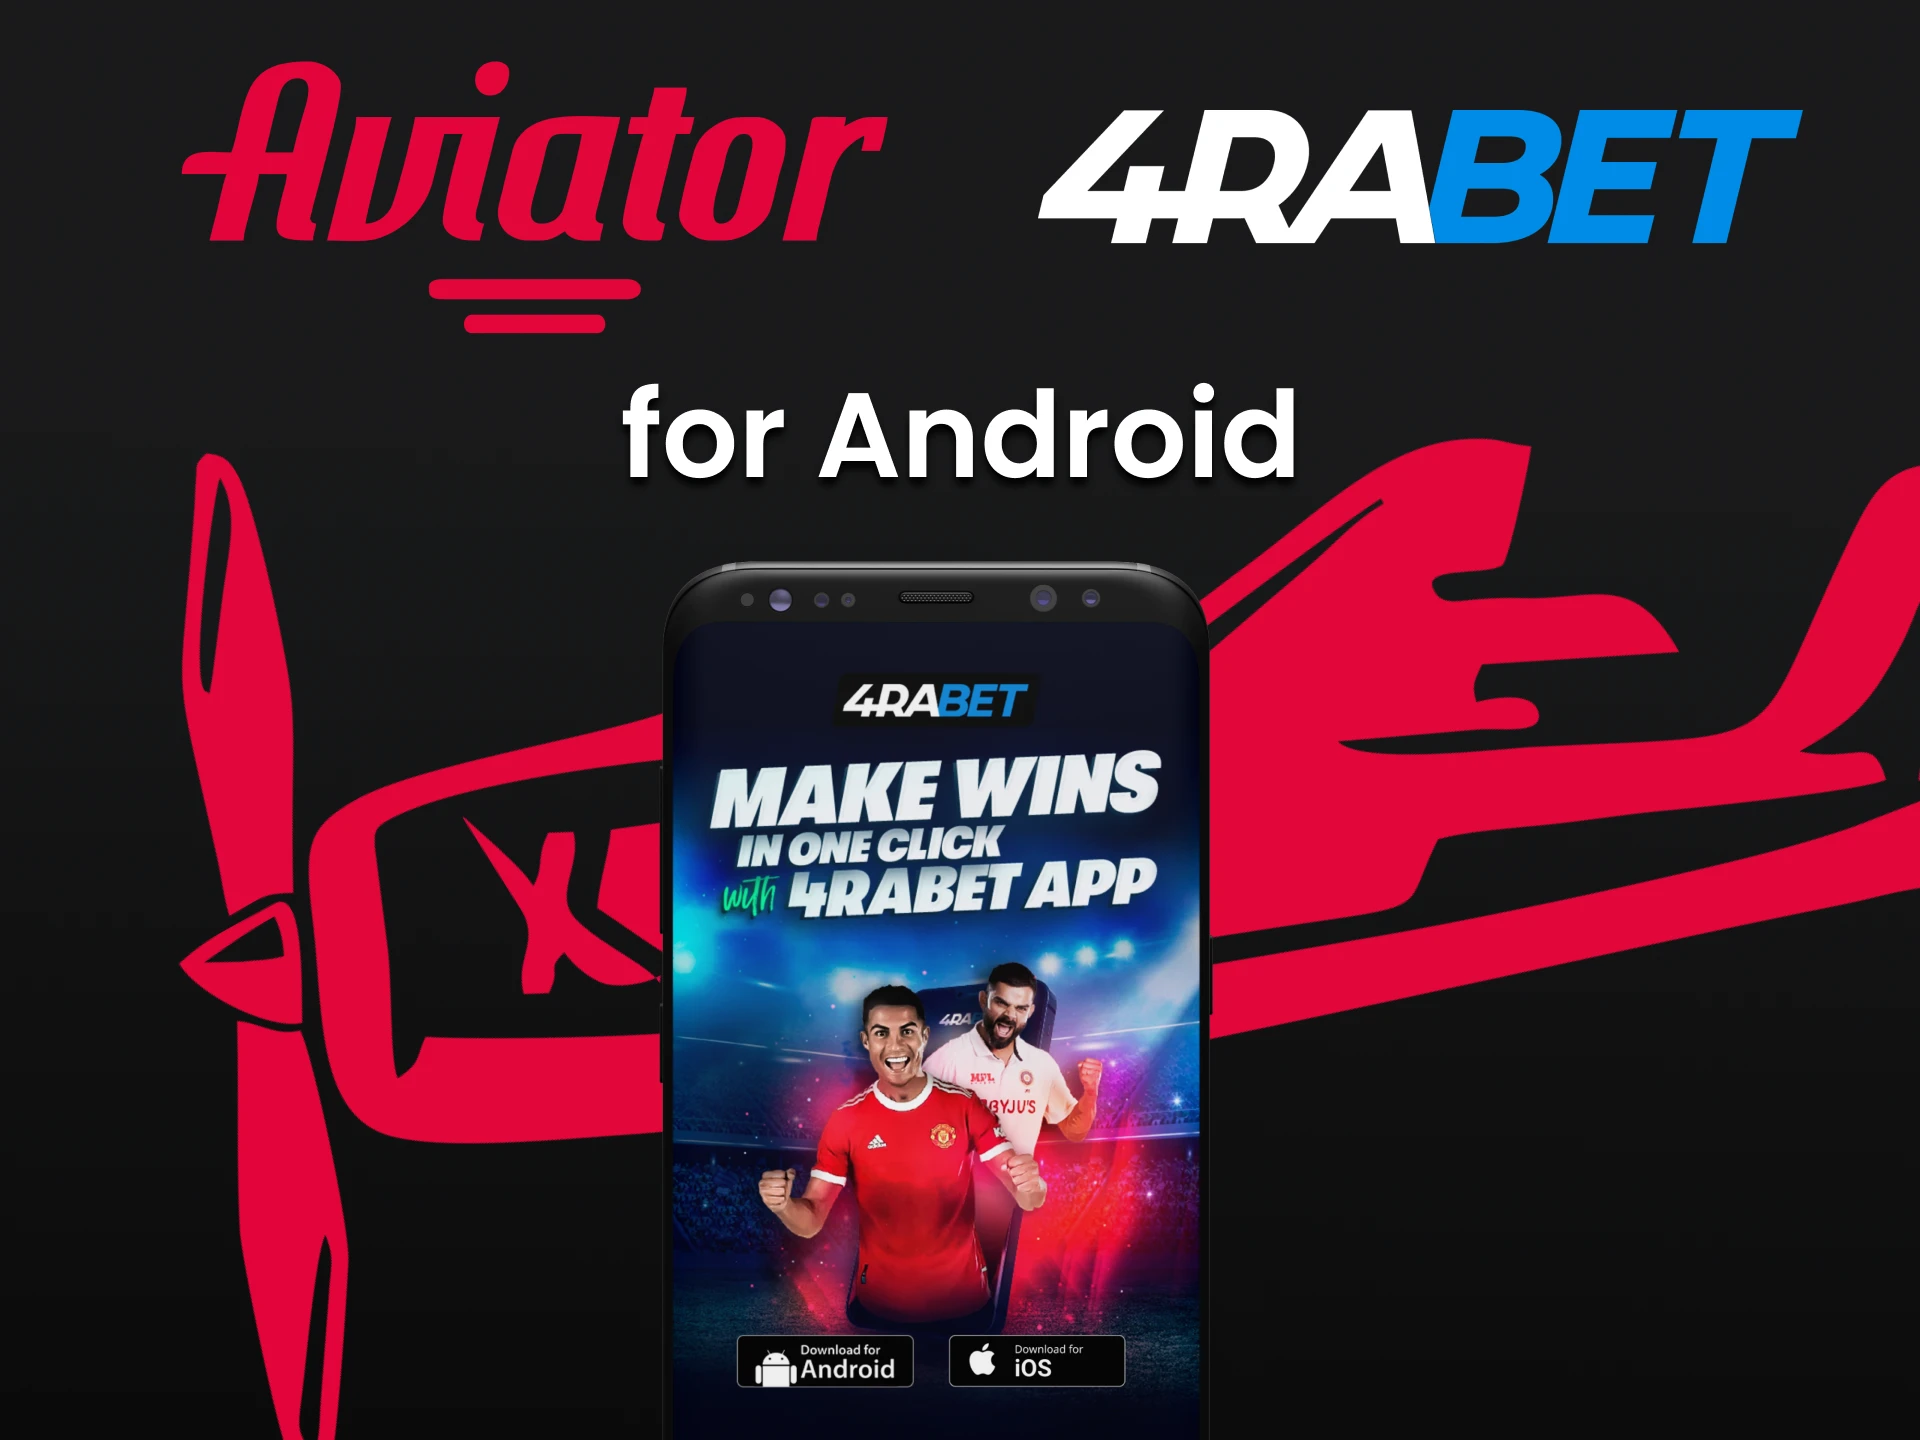 Faça o download do aplicativo 4rabet para Android.